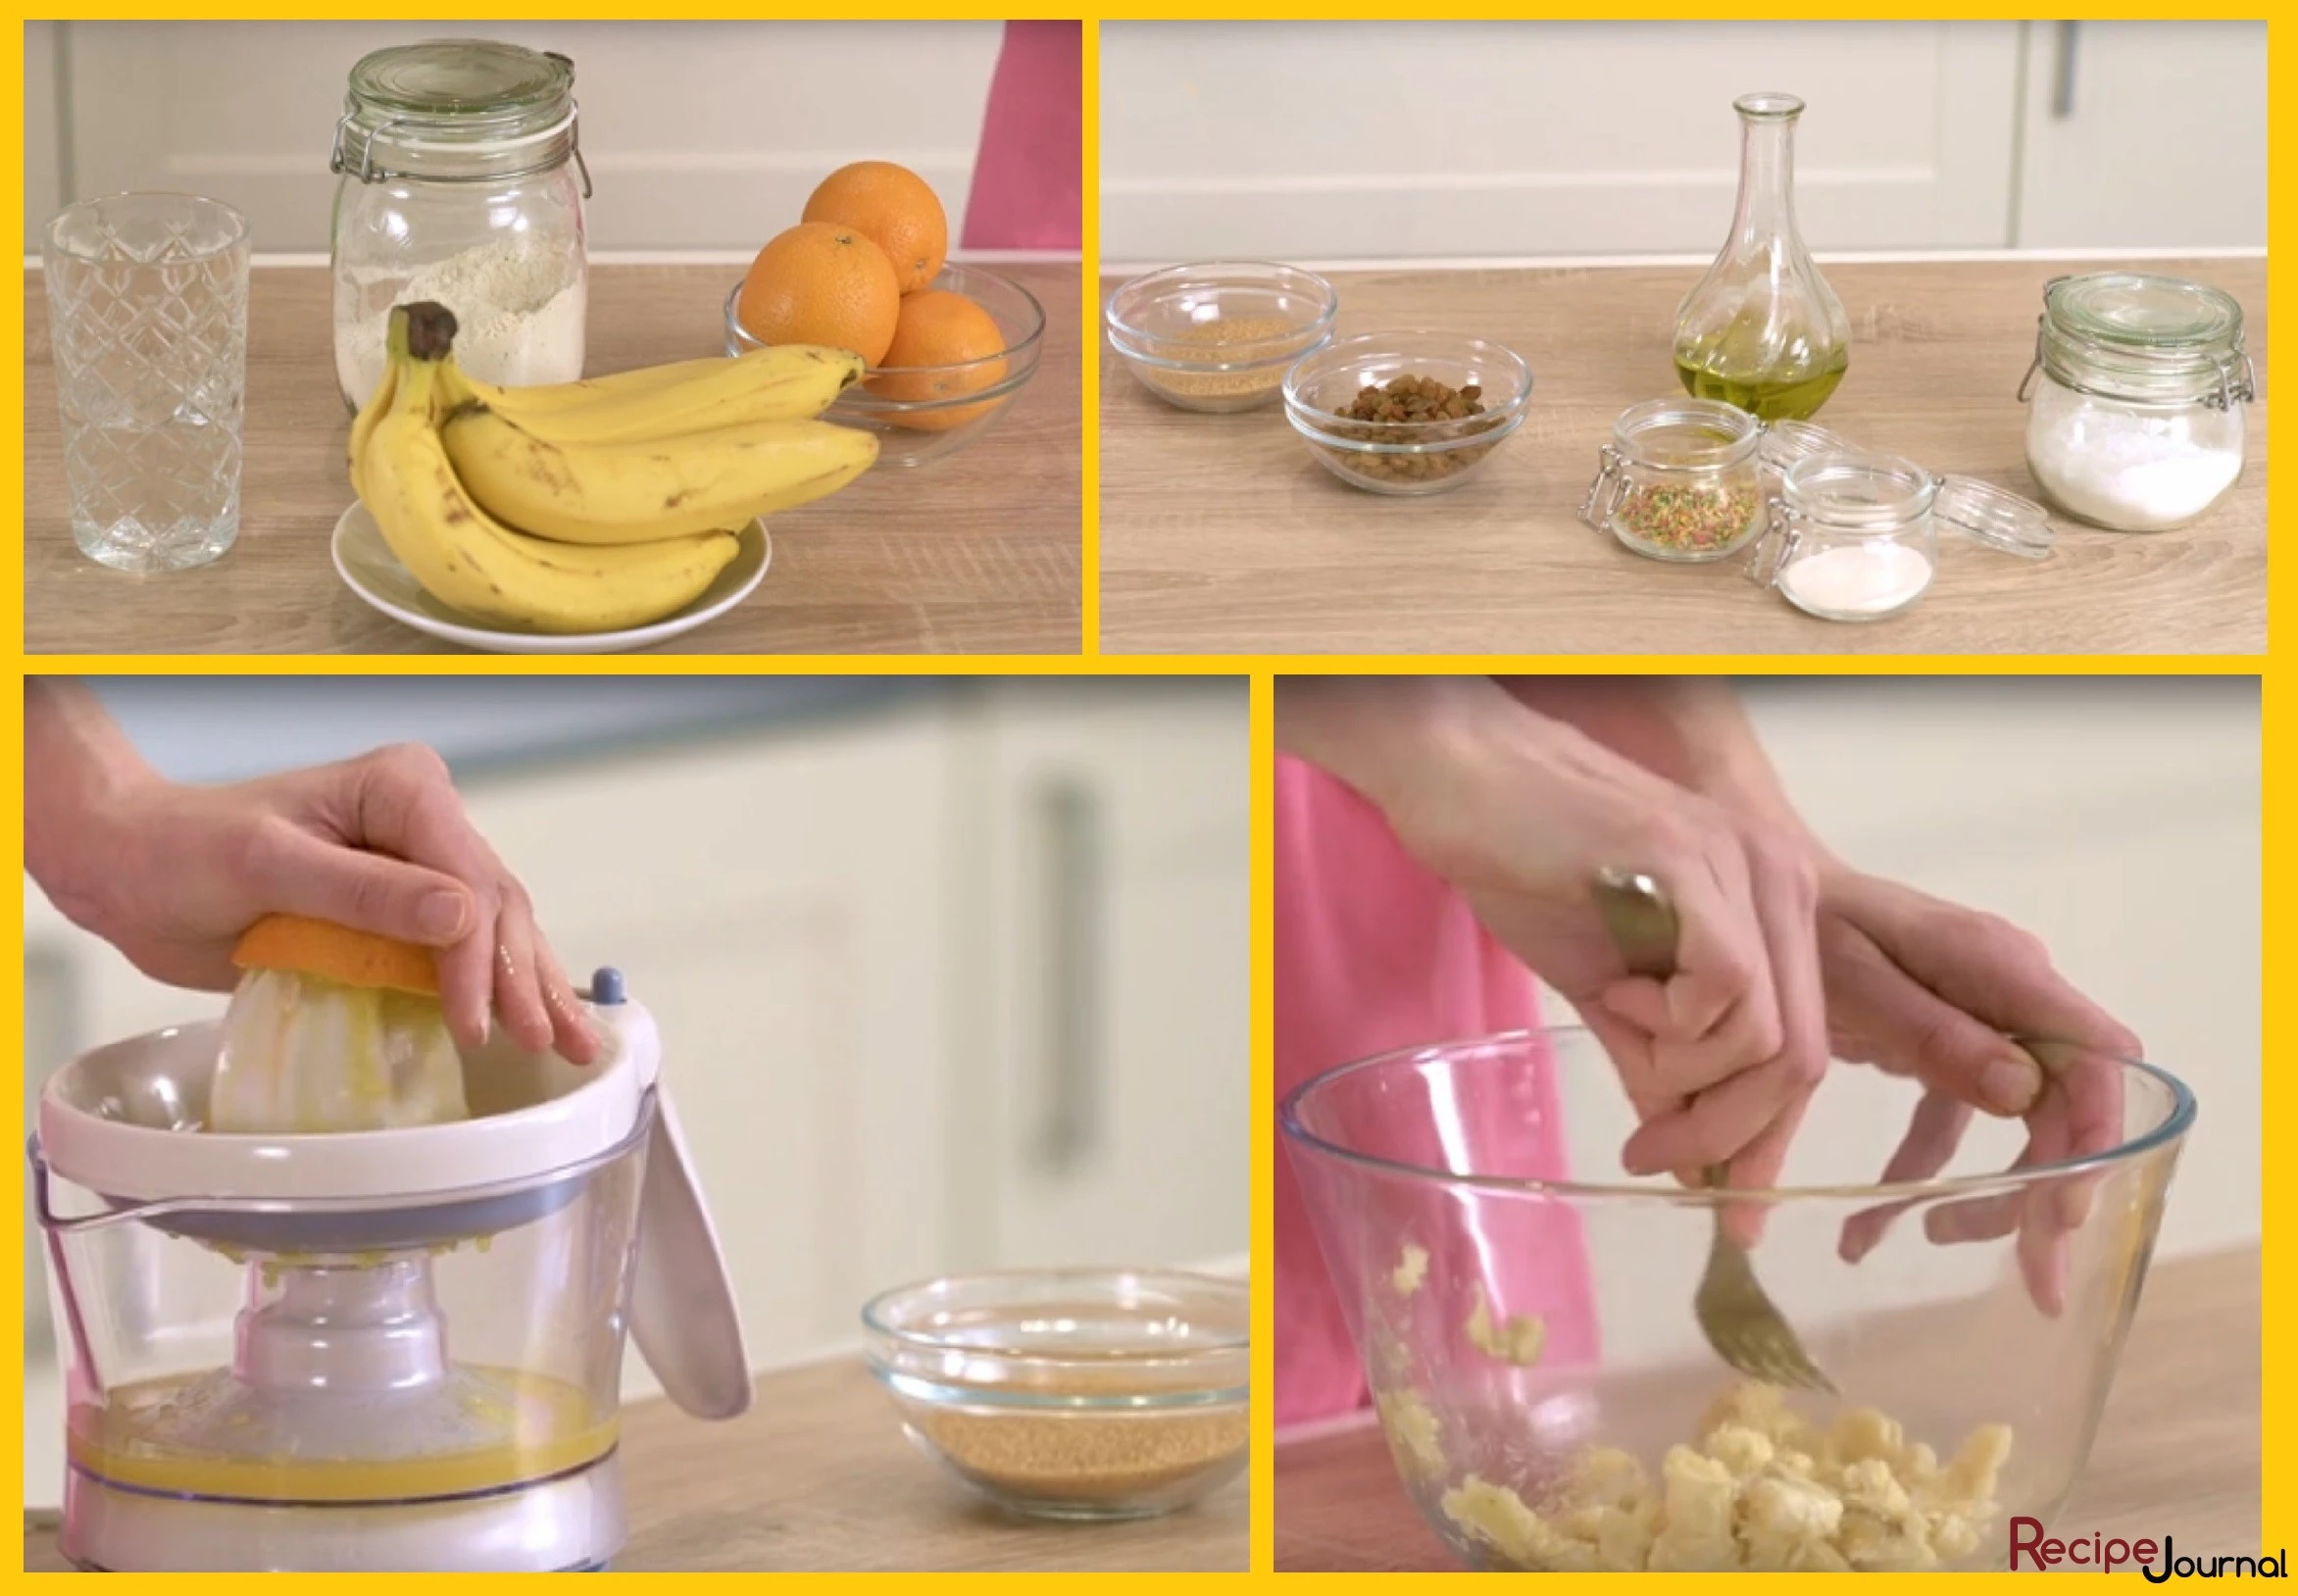 Соберем необходимые ингредиенты, чтобы не отвлекаться во время готовки. Отожмем нужное количество сока. Очистим банан и разомнем его вилкой.